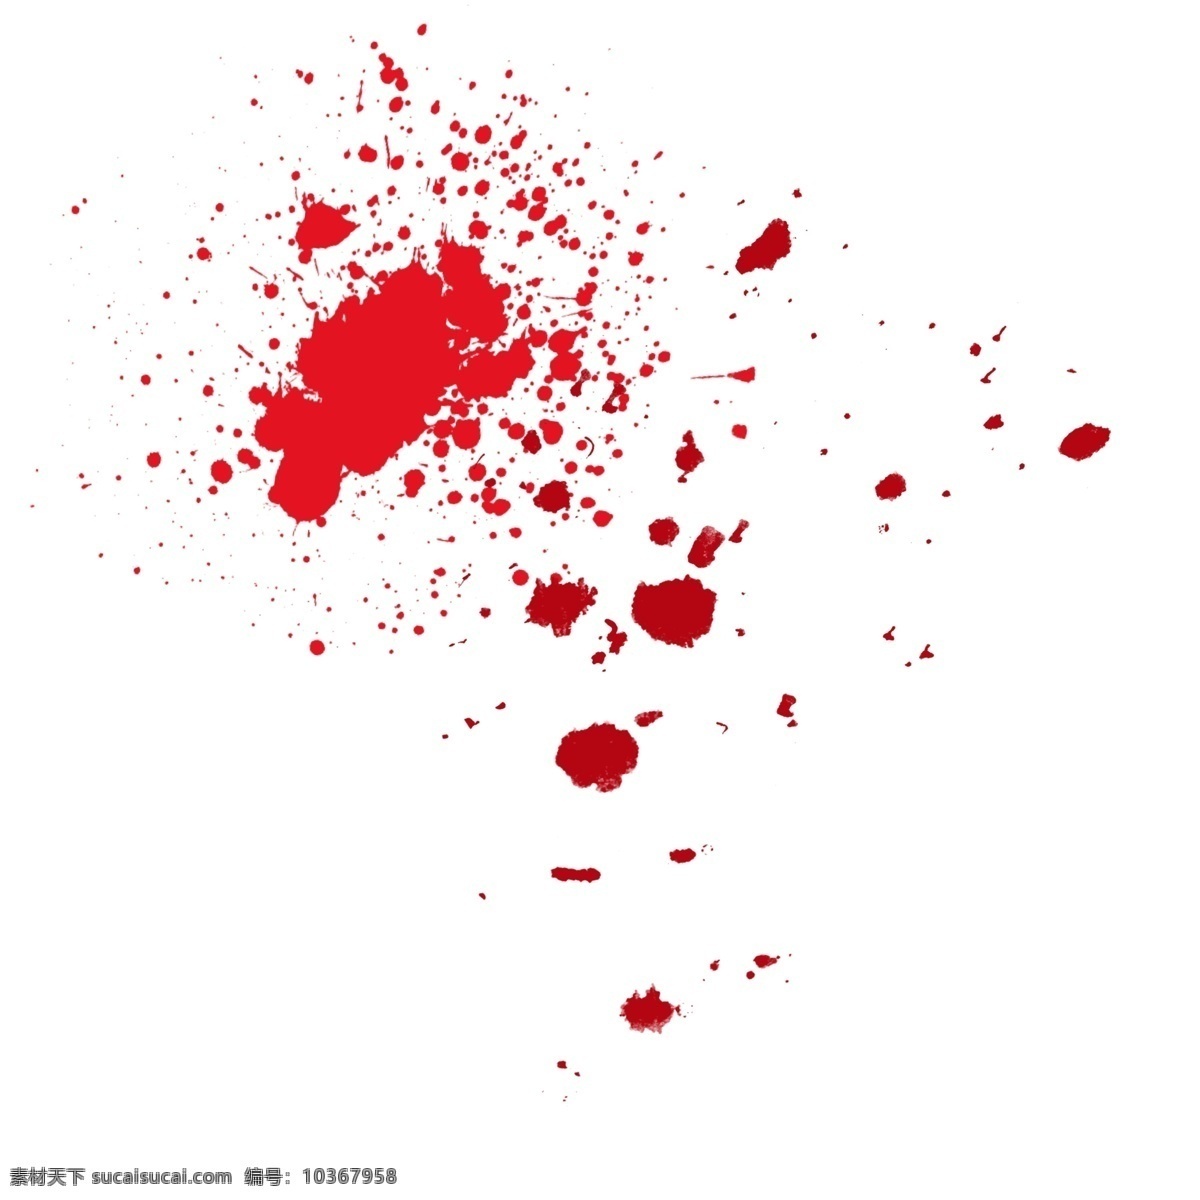 红色 血迹 痕迹 元素 泼墨 抽象 装饰 血 滴 污渍 载体 血滴 喷溅 血痕 笔刷 水彩